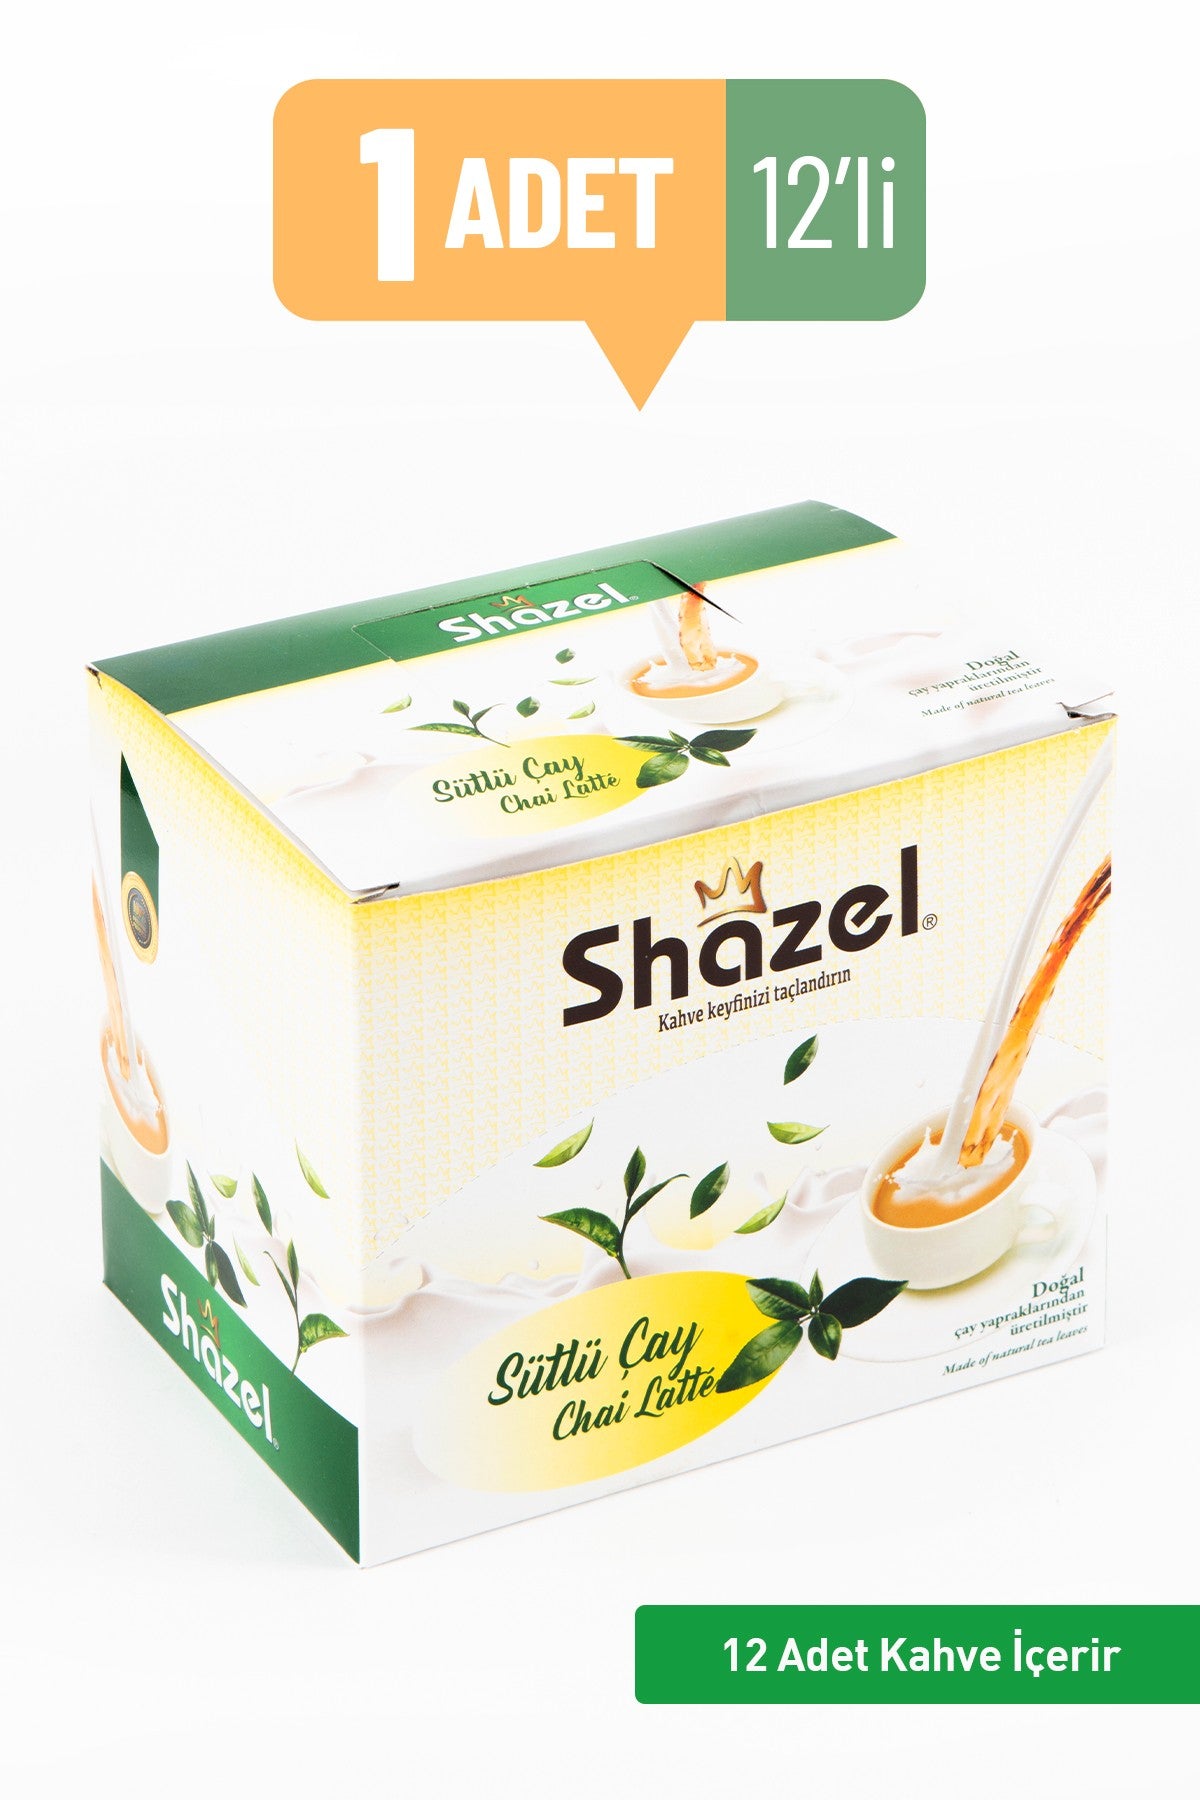 Shazel Chai Latte Plain 19g 12 PIECES 1 box